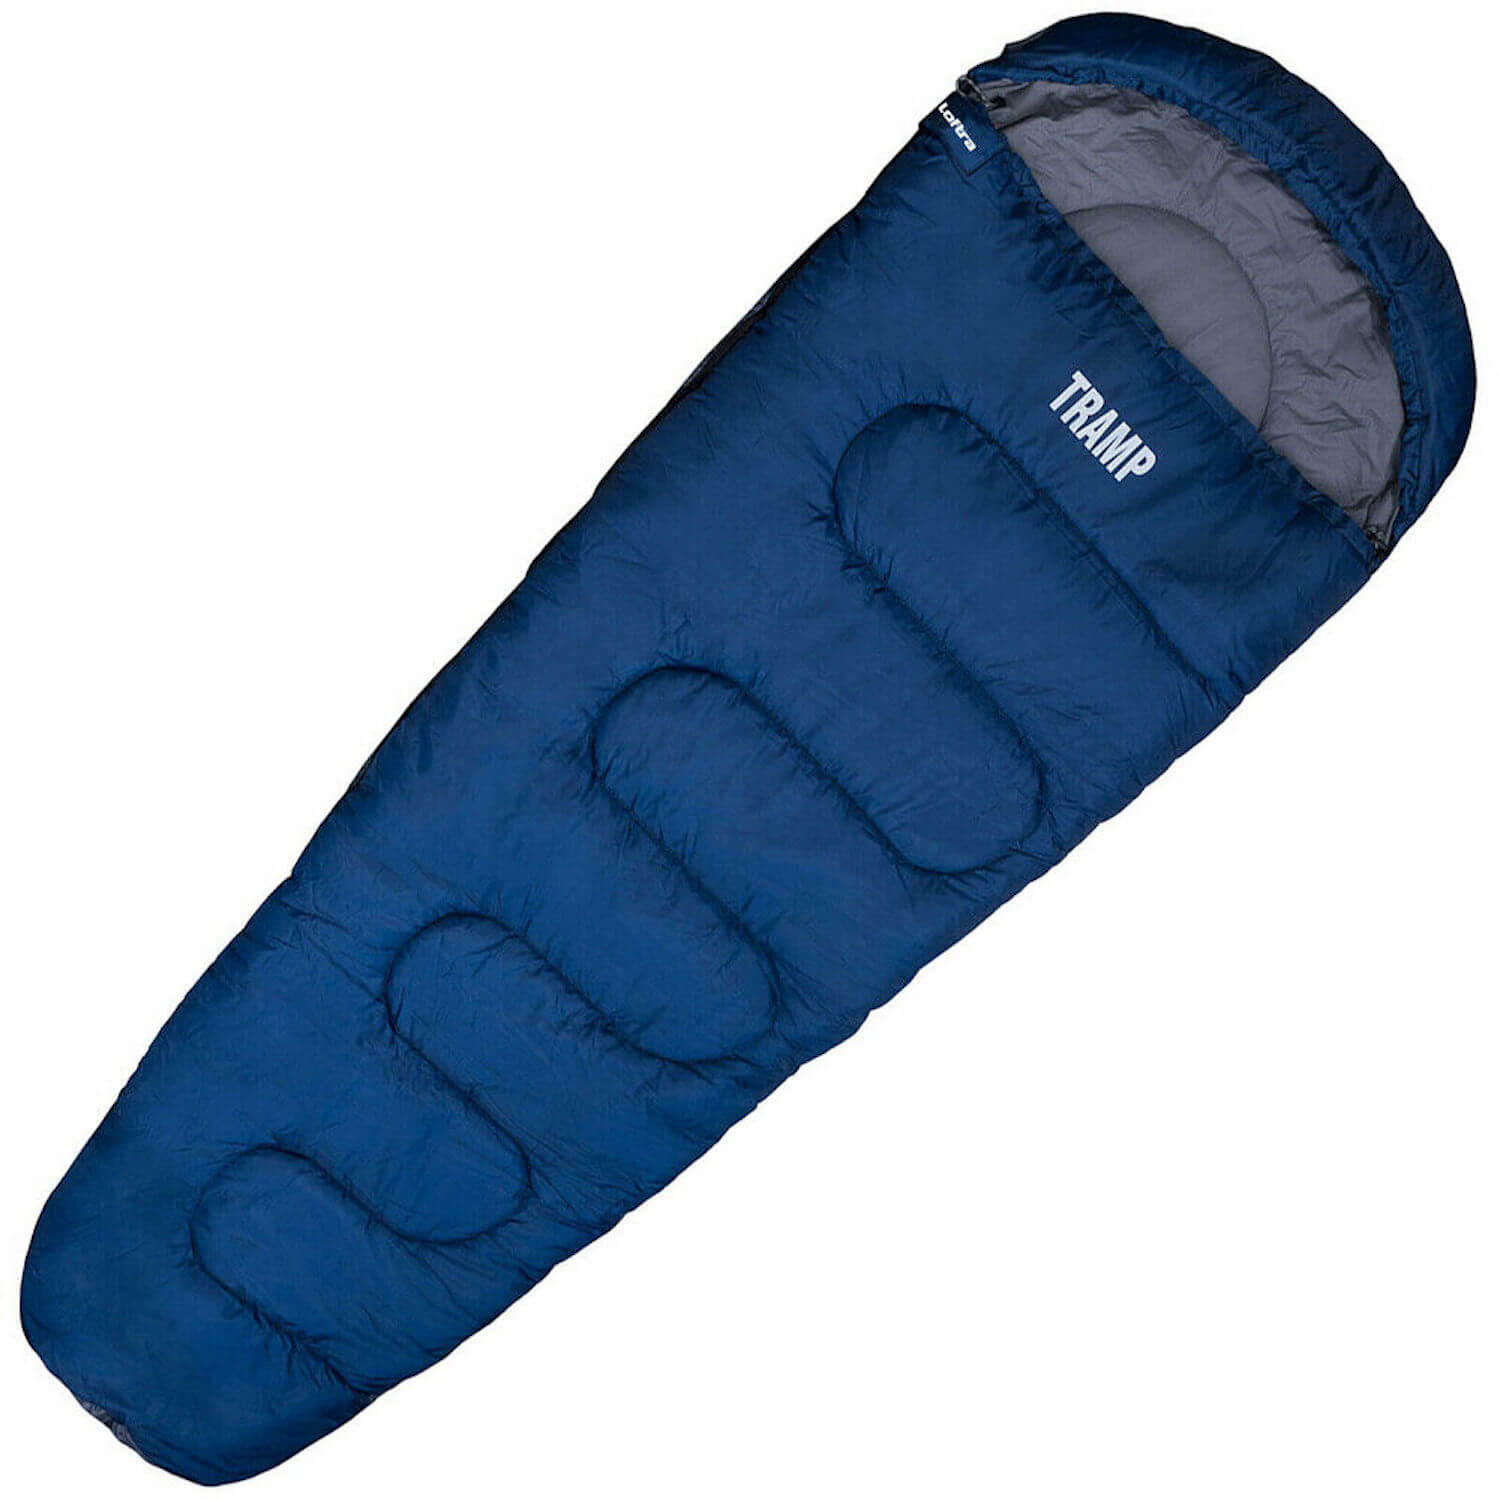 Mumienschlafsack Schlafsack für Sommer Camping Wandern Outdoor Explorer -9°C